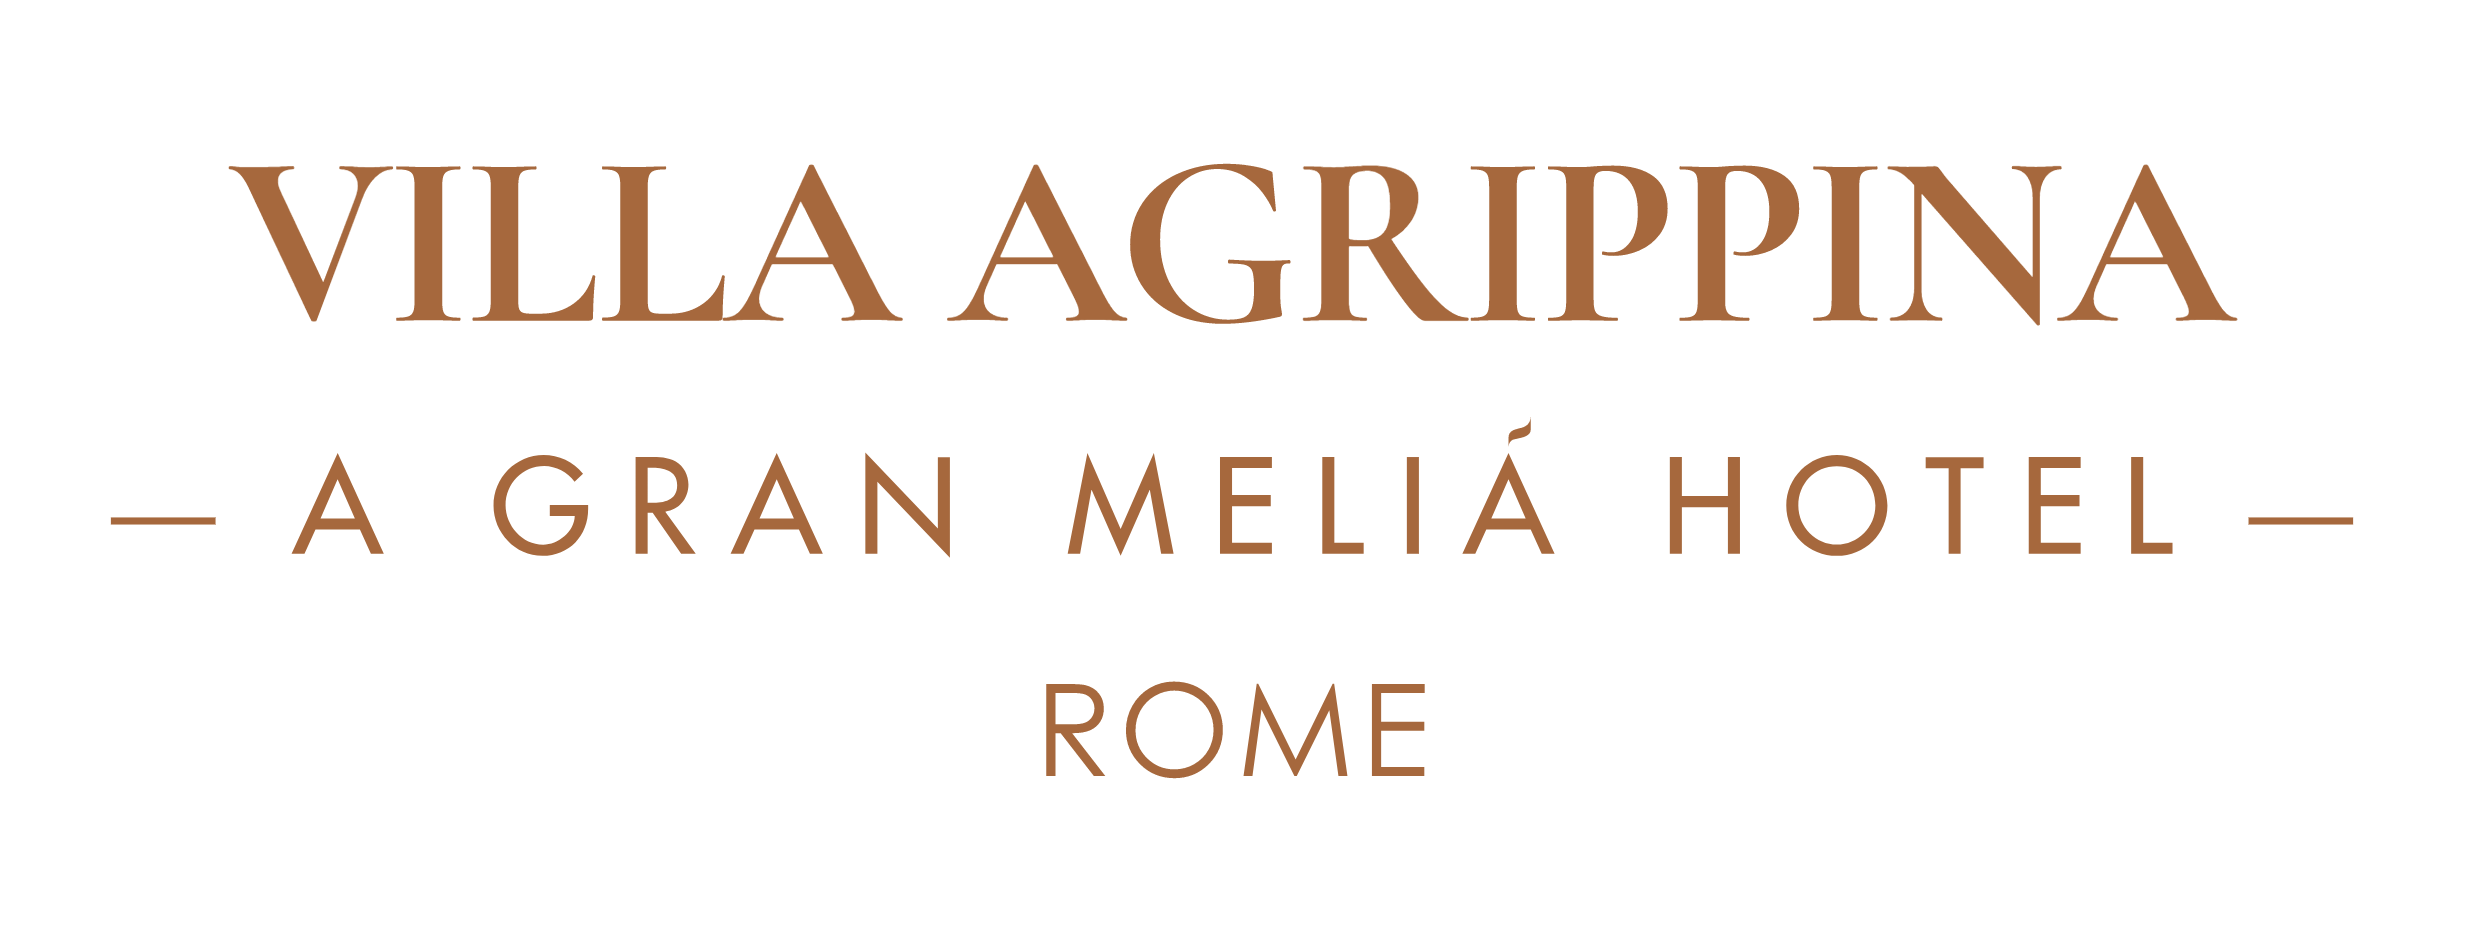 Villa Agrippina logo